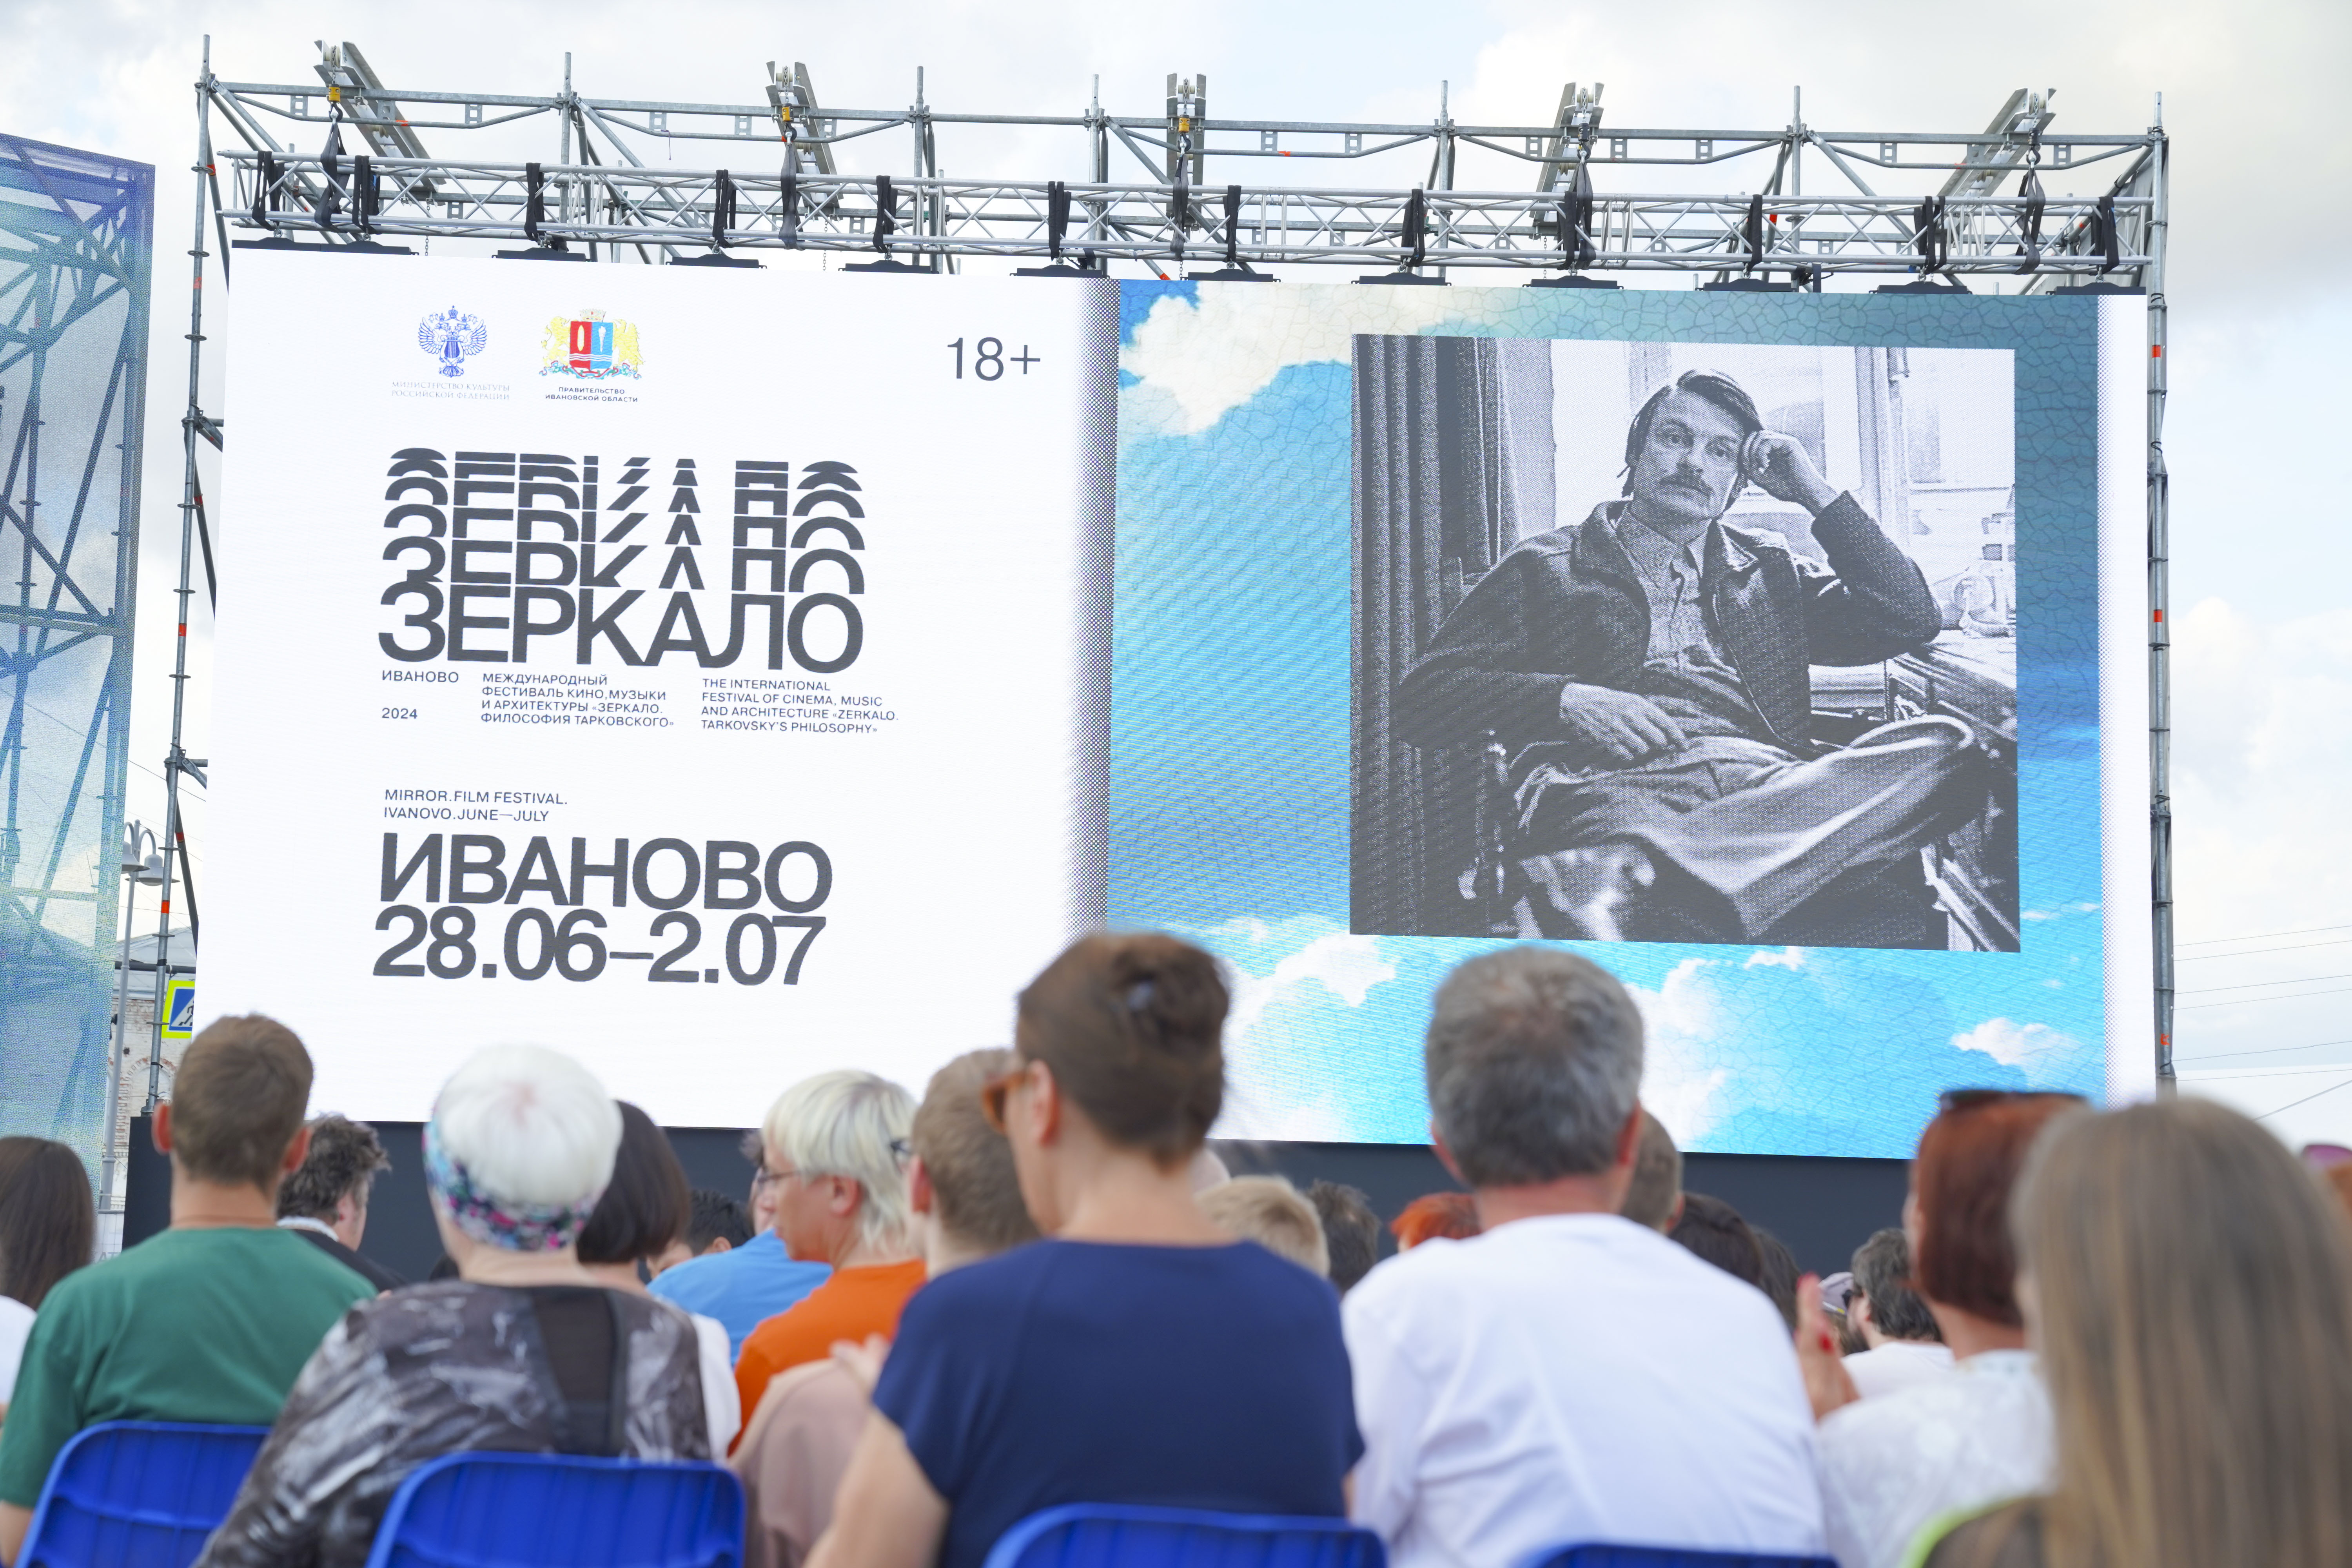 В Юрьевце открылся фестиваль “Зеркало” имени Андрея Тарковского